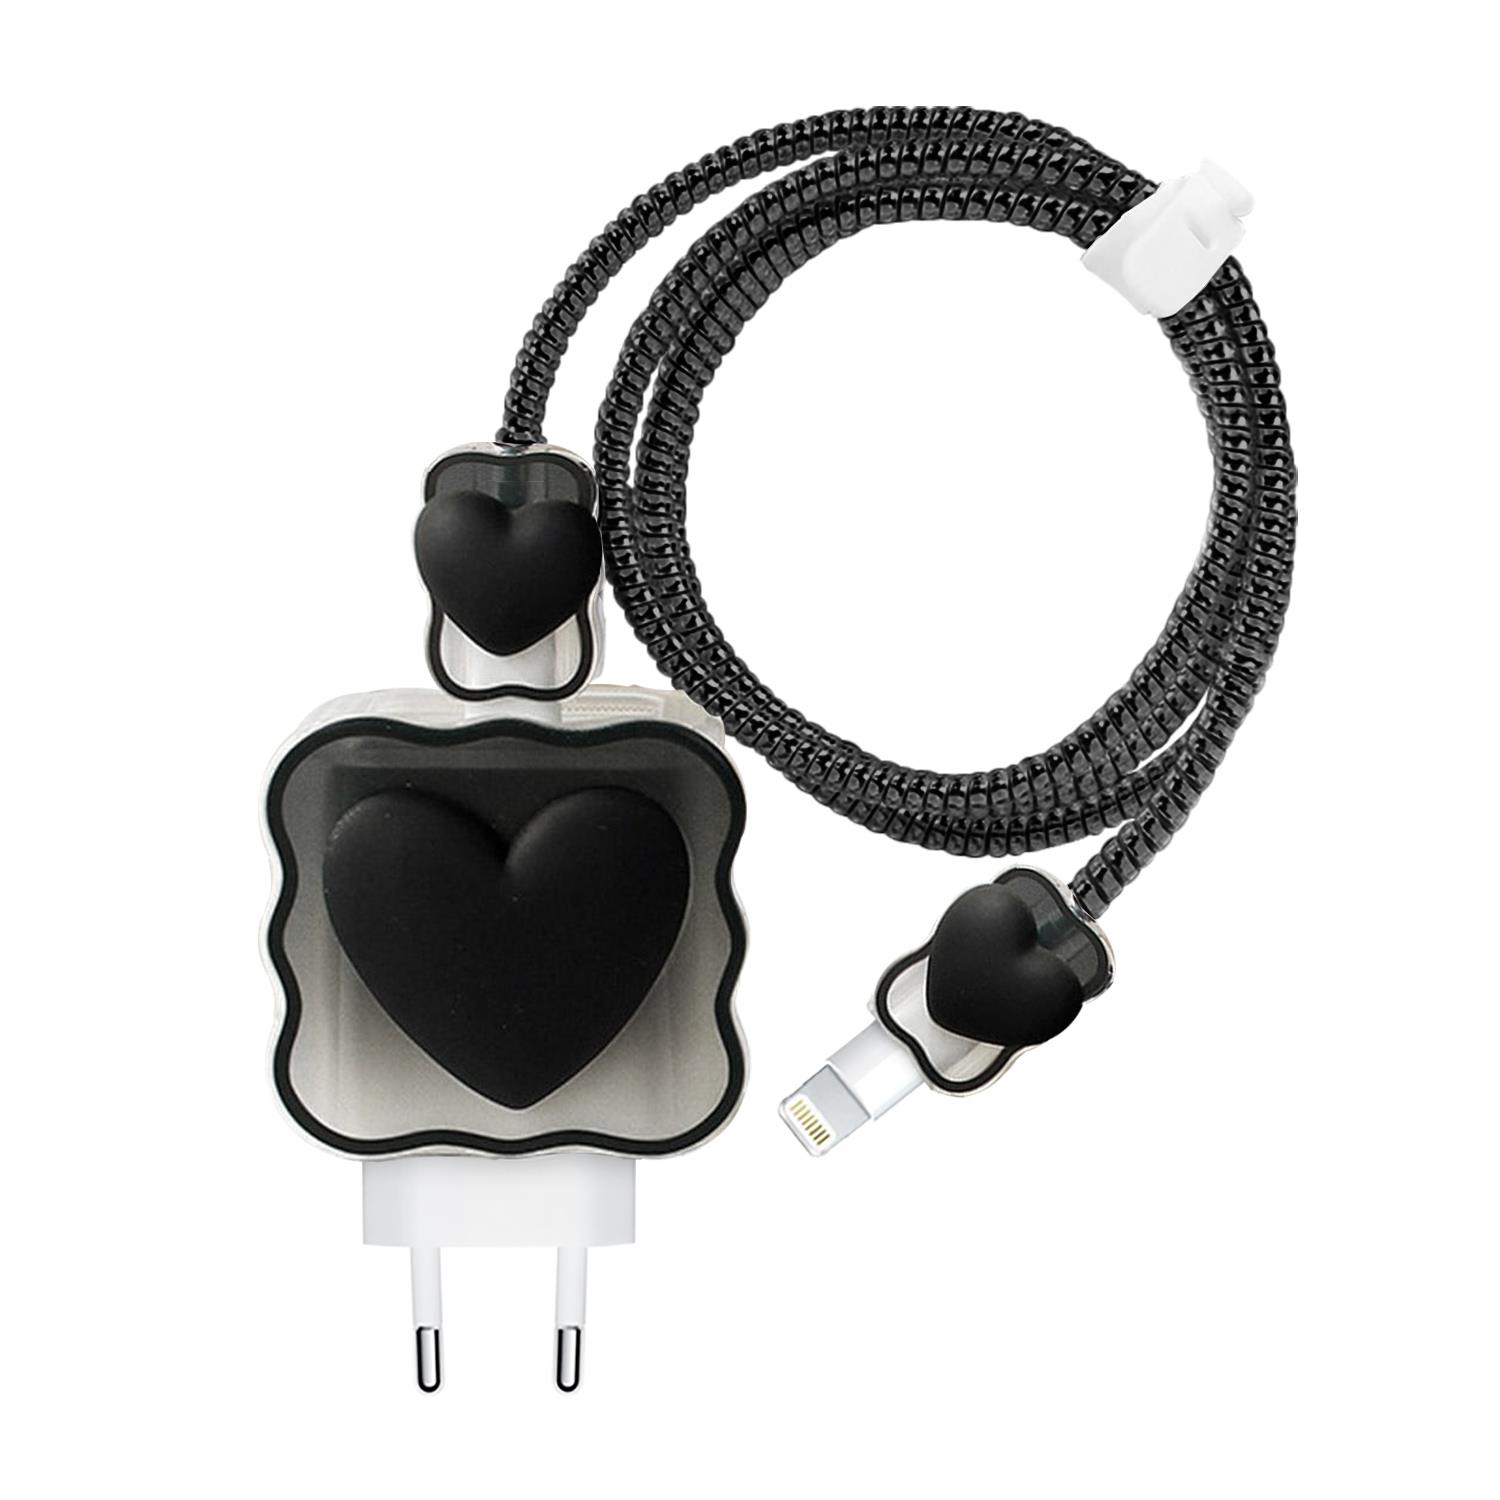 Microsonic Apple iPhone Kablo Koruyucu ve Şarj Adaptör Kılıf Süslü Kalp Desenli Siyah